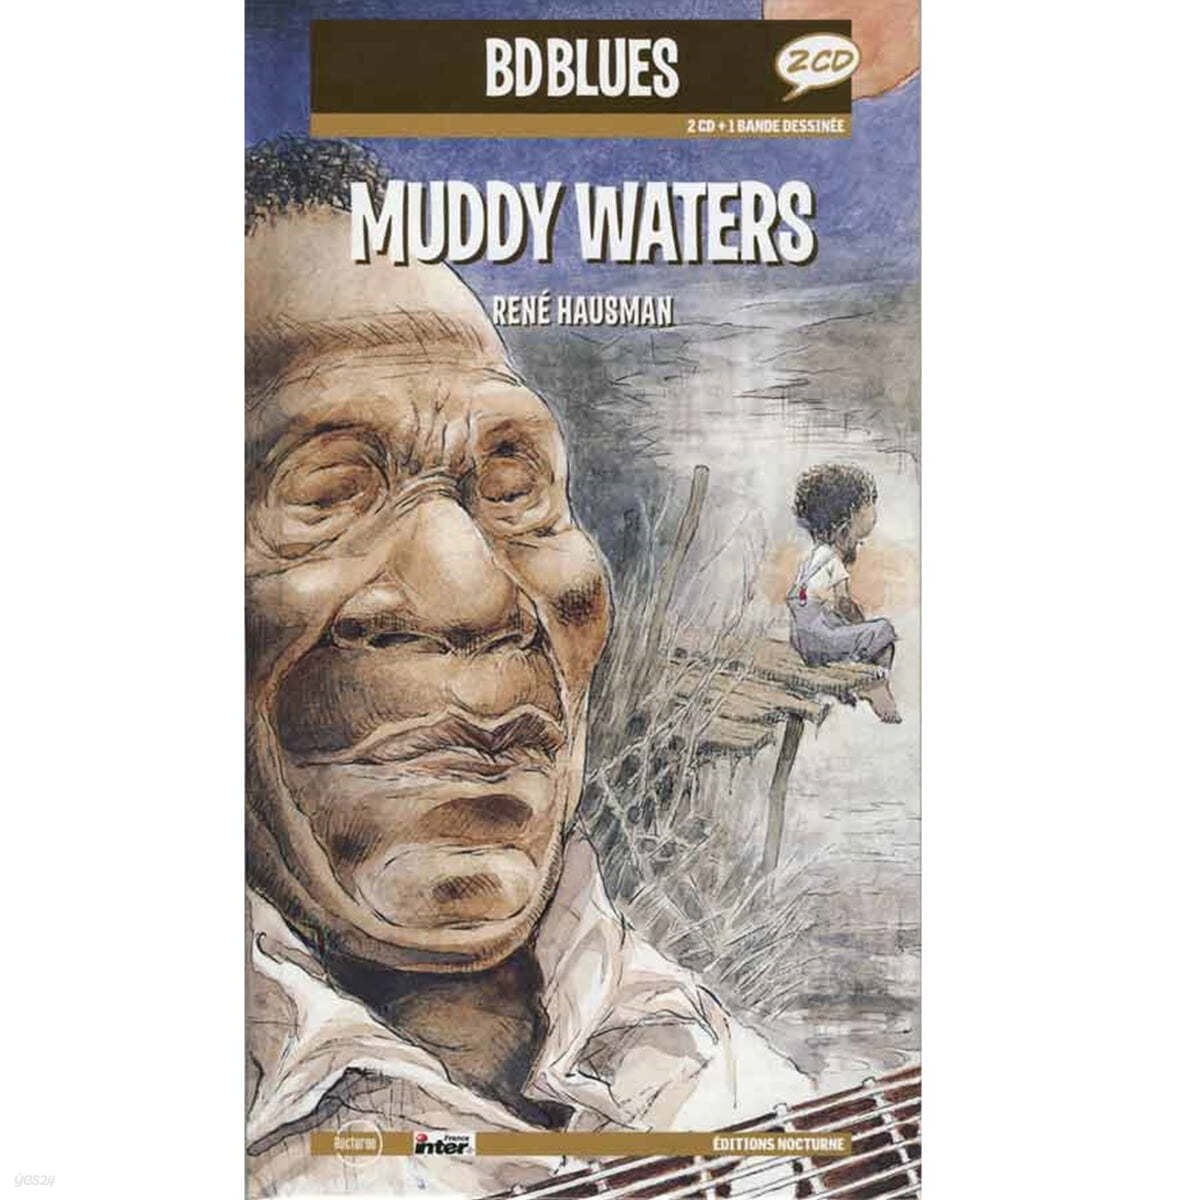 일러스트로 만나는 머디 워터스 (Muddy Waters Illustrated by Rene Hausman) 